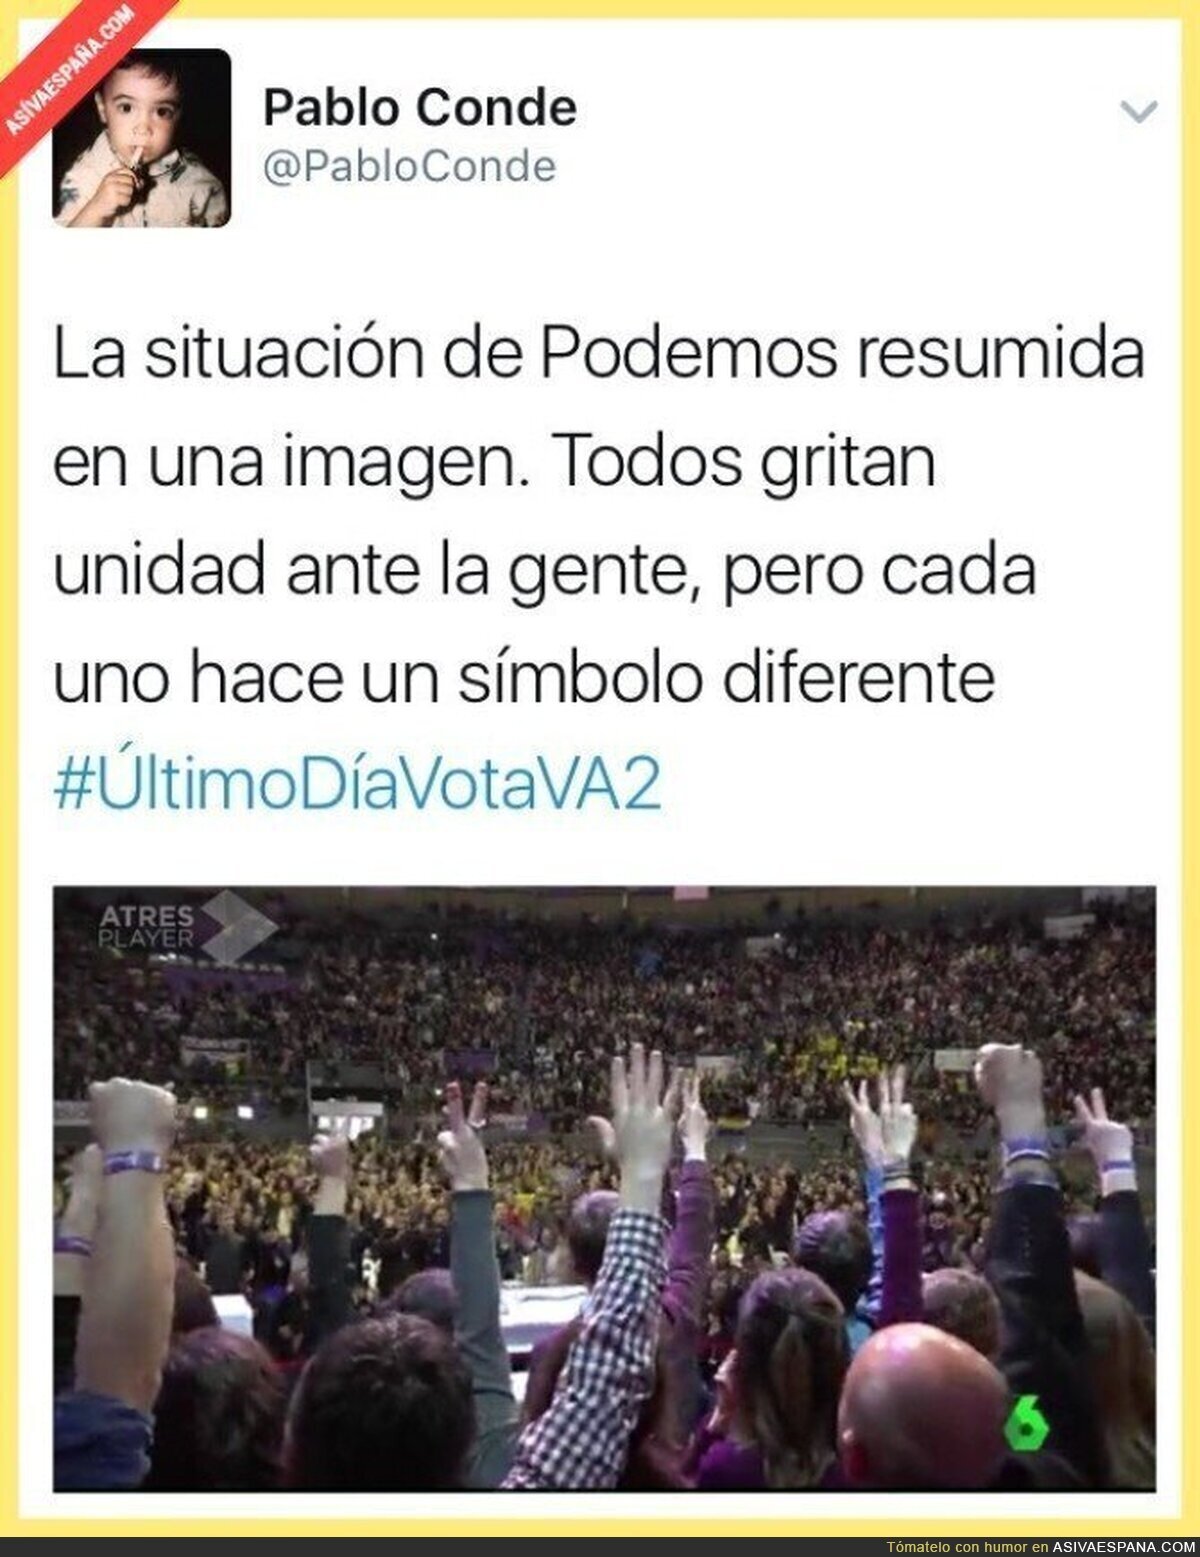 No hay unidad en los gestos de Podemos